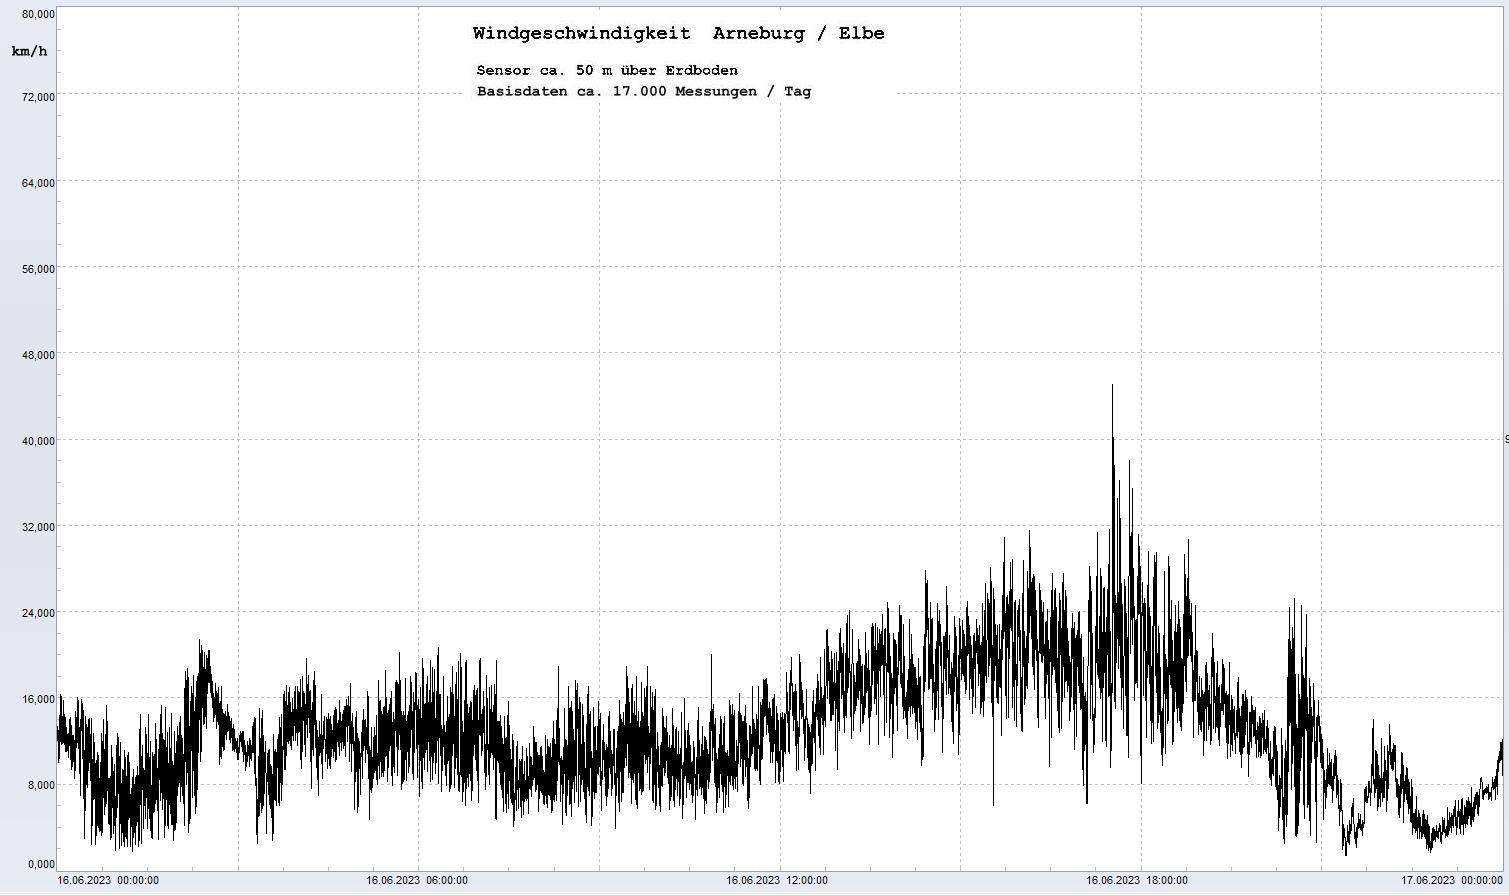 Arneburg Tages-Diagramm Winddaten, 16.06.2023
  Diaramm, Sensor auf Gebäude, ca. 50 m über Erdboden, Basis: 5s-Aufzeichnung